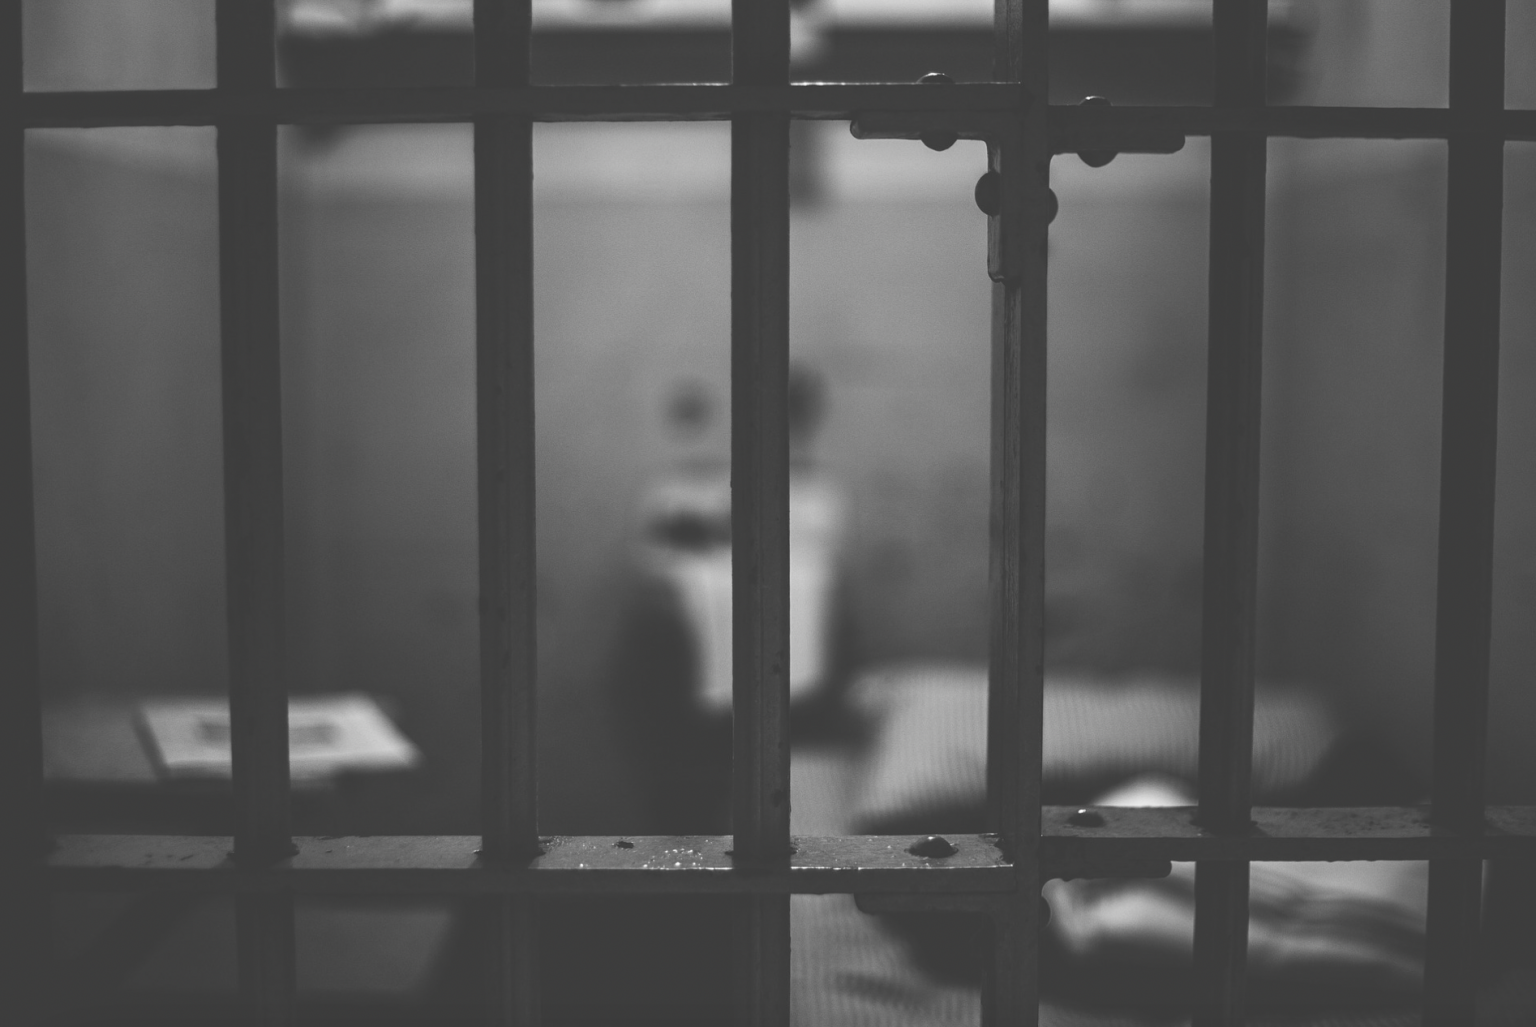 En prisión preventiva por el delito de estupro en agravio de alumna